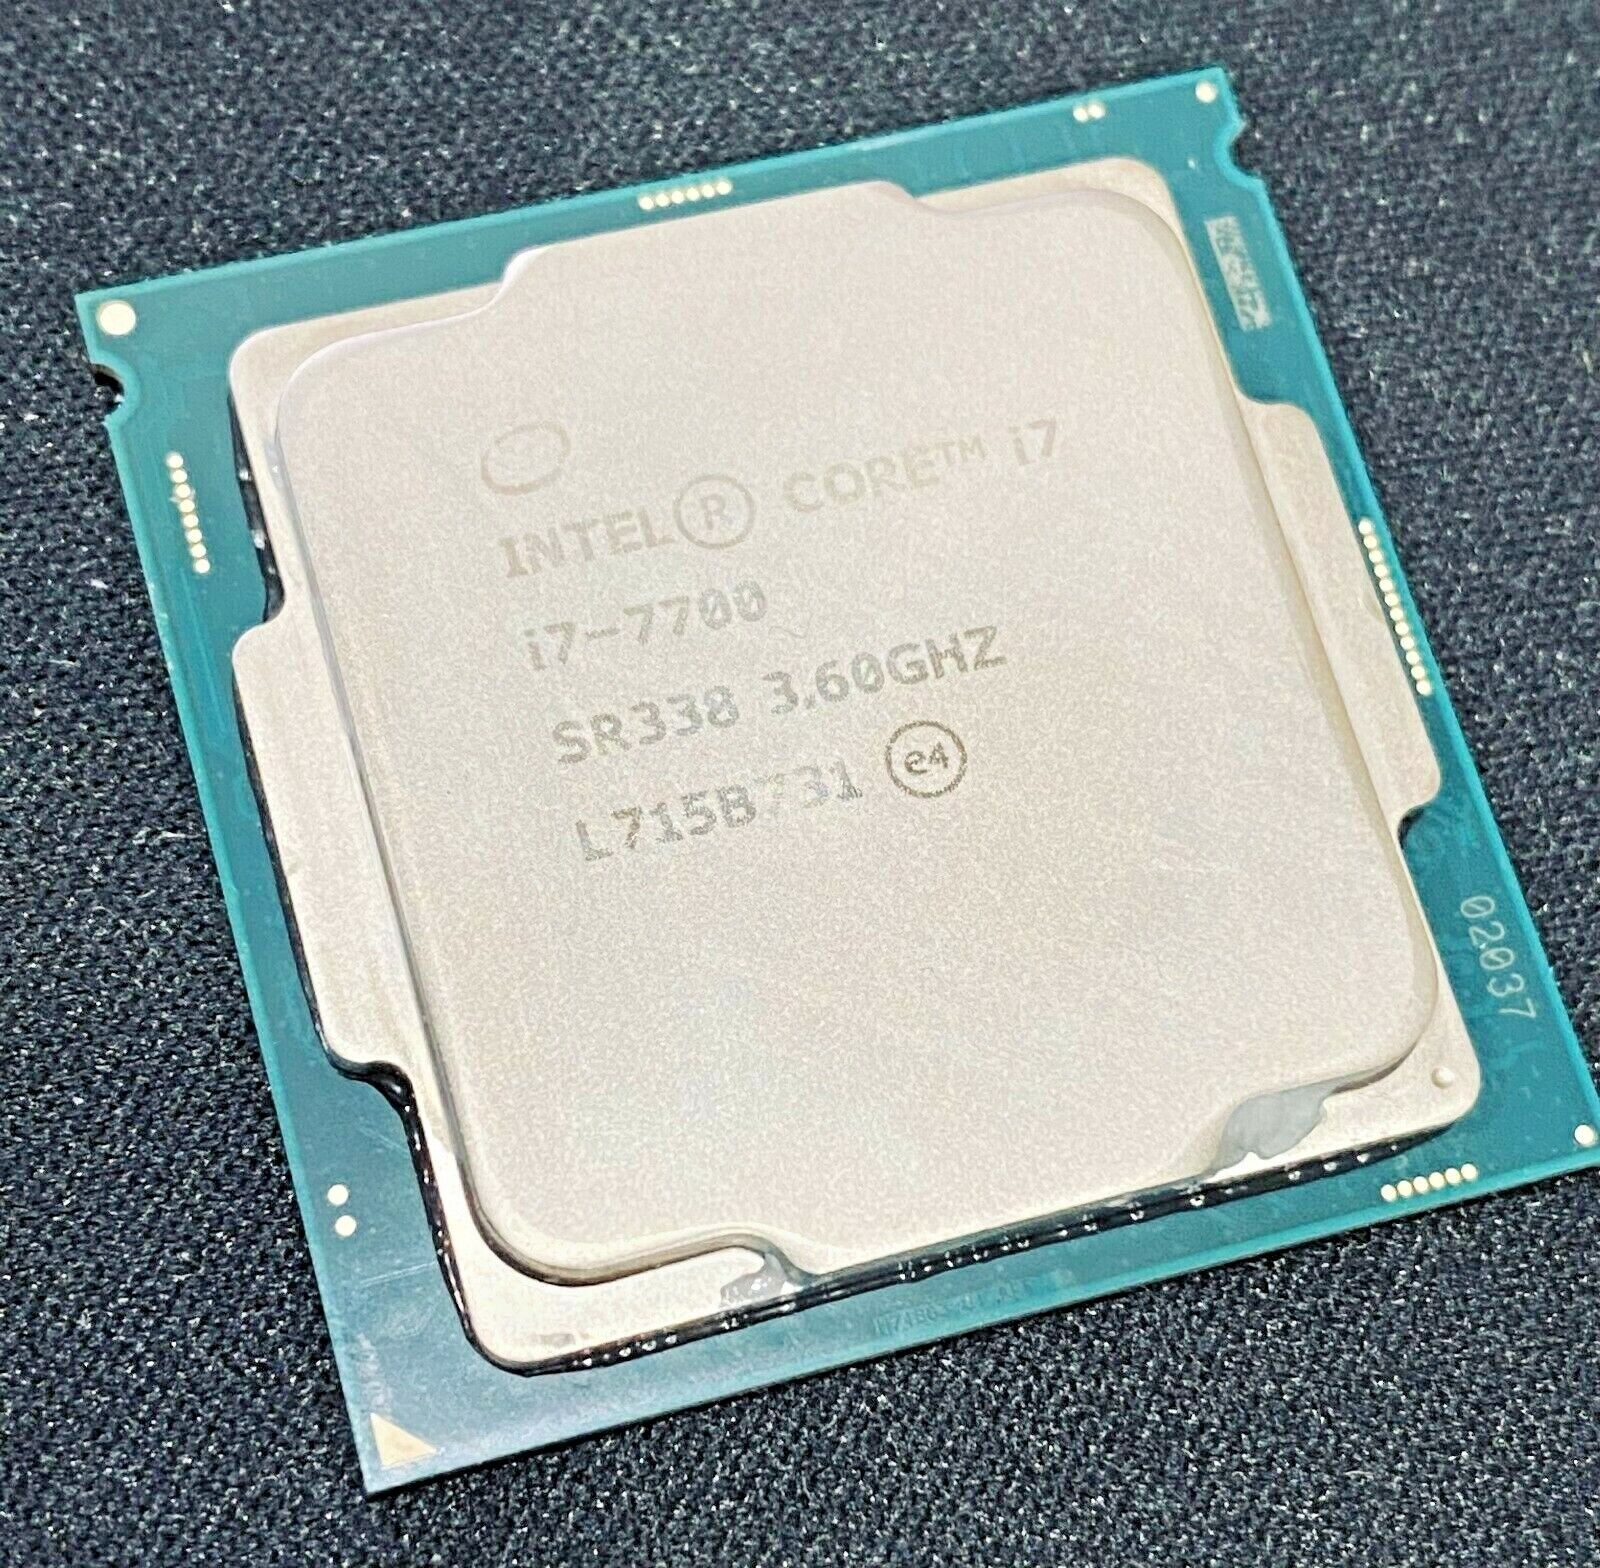 Intel Core i7-7700 3.60GHz Desktop Computer CPU Processor SR338 Socket LGA1151